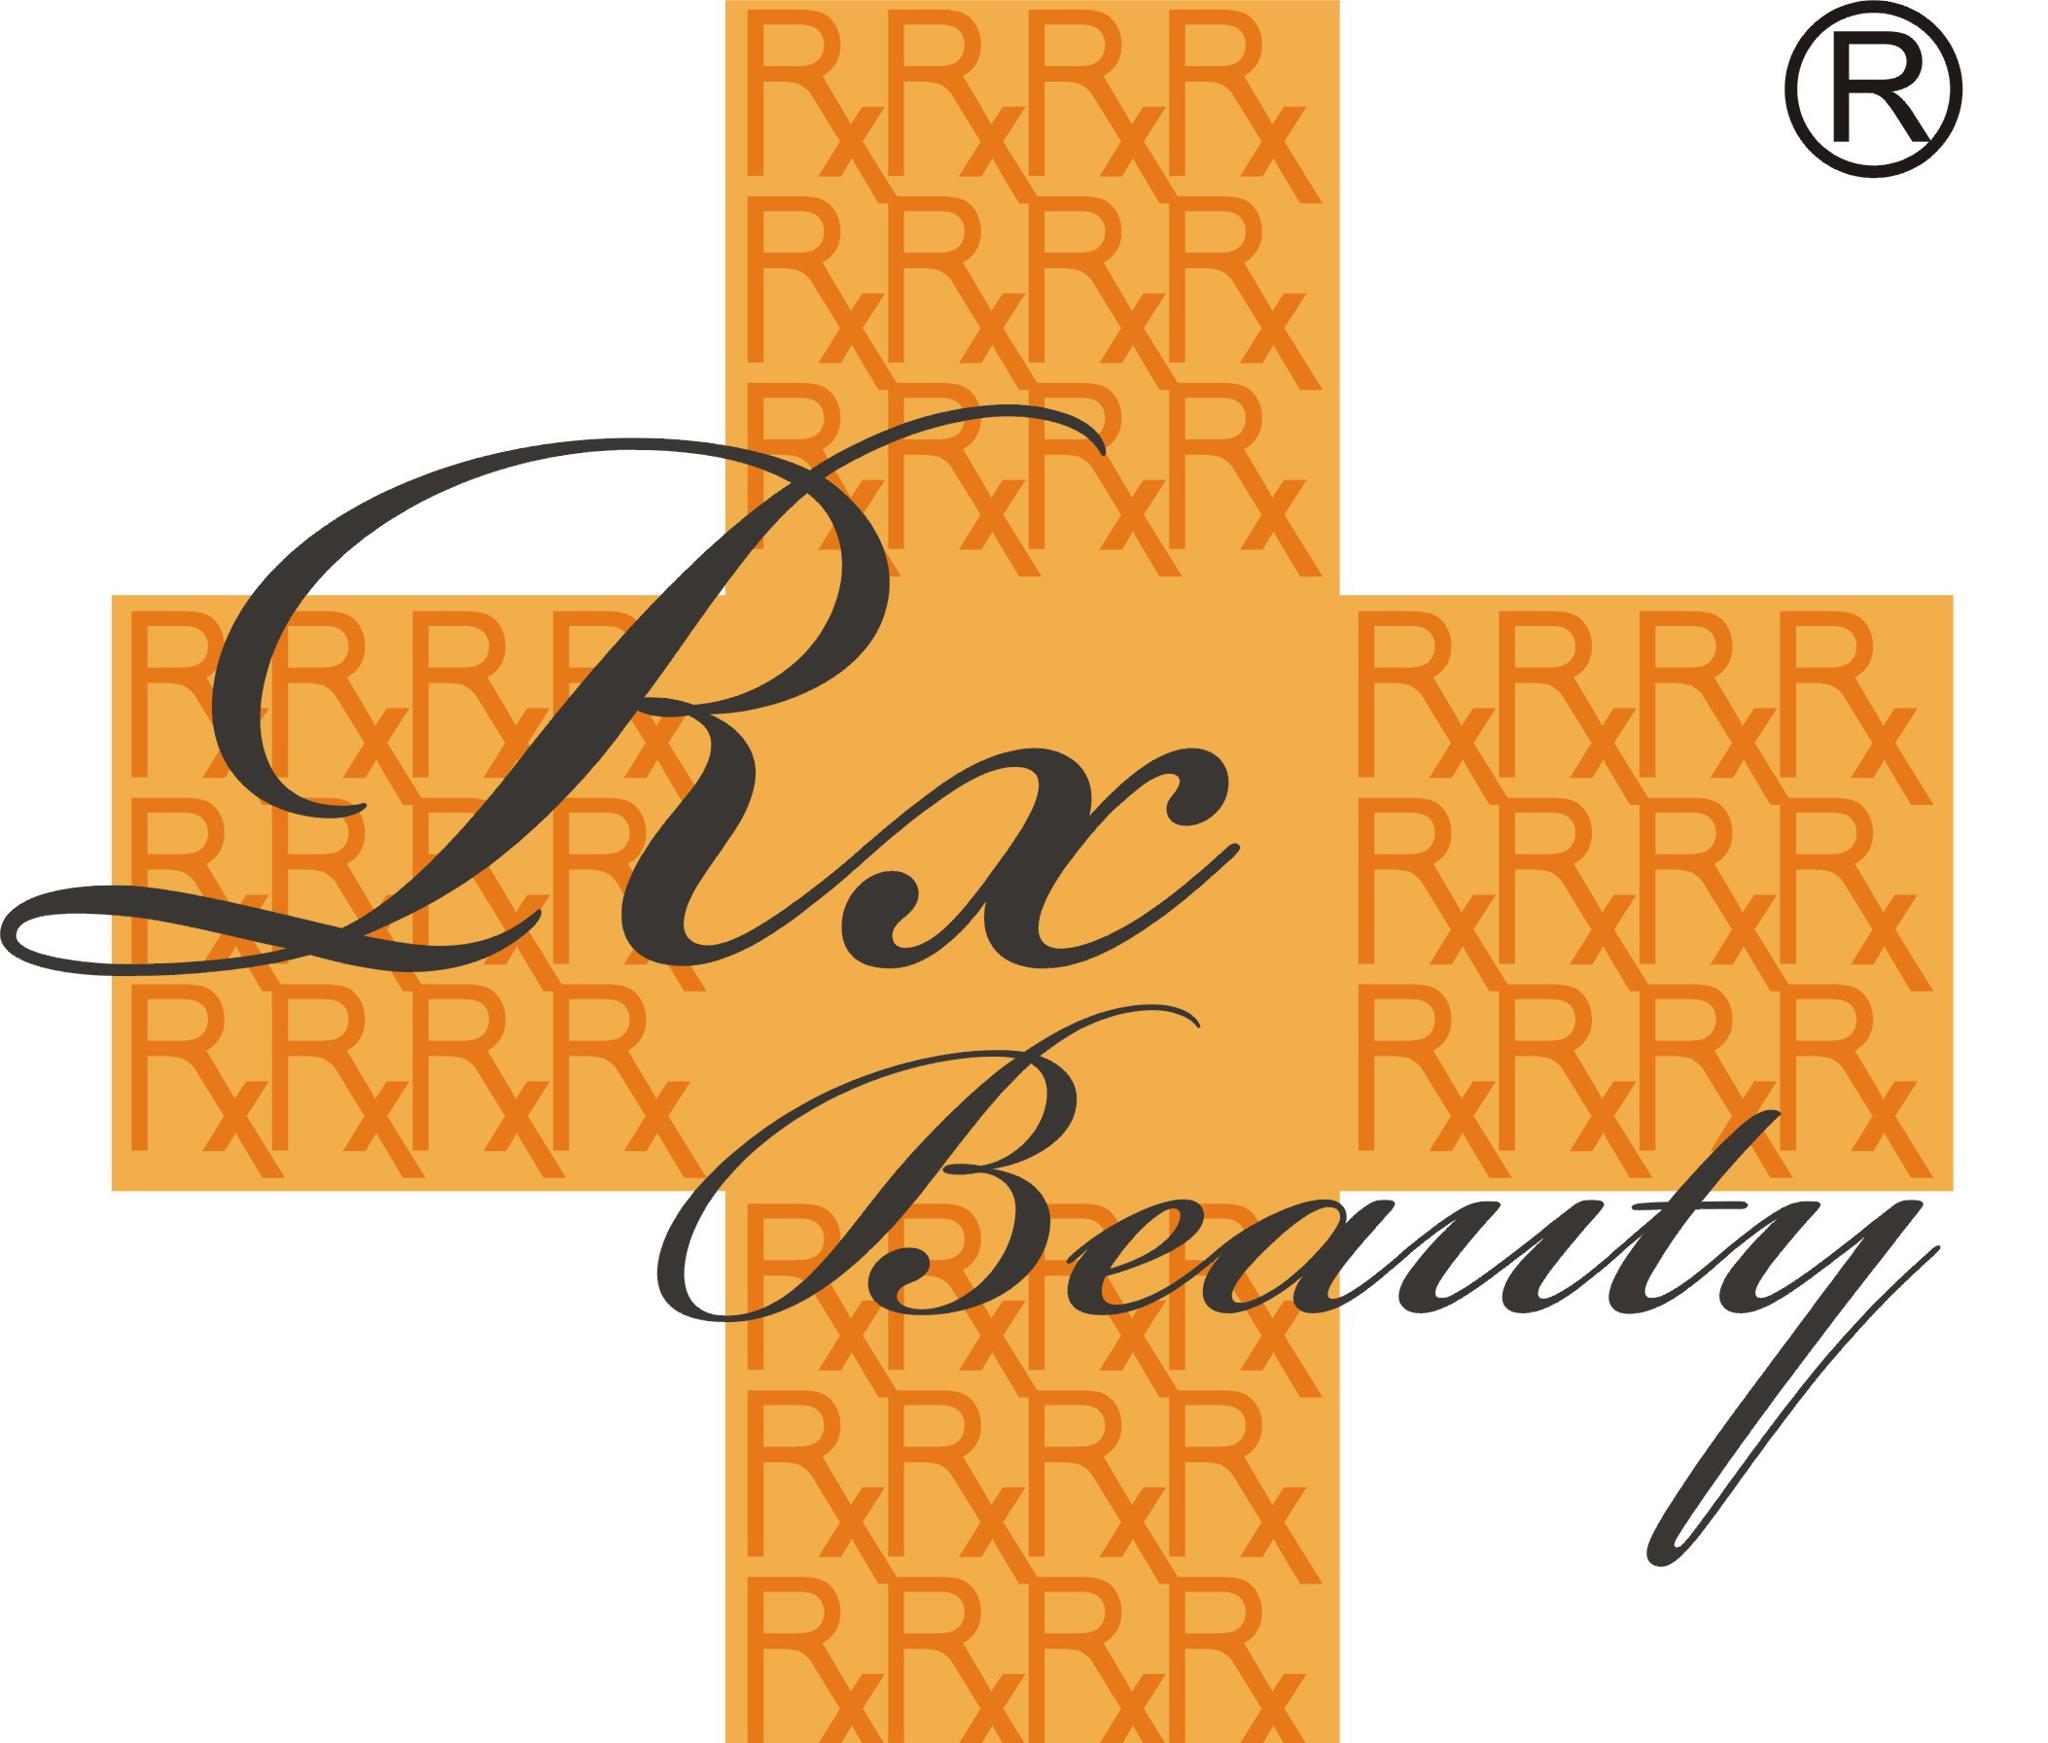 美容院 Beauty Salon: Rx Beauty (元朗店)